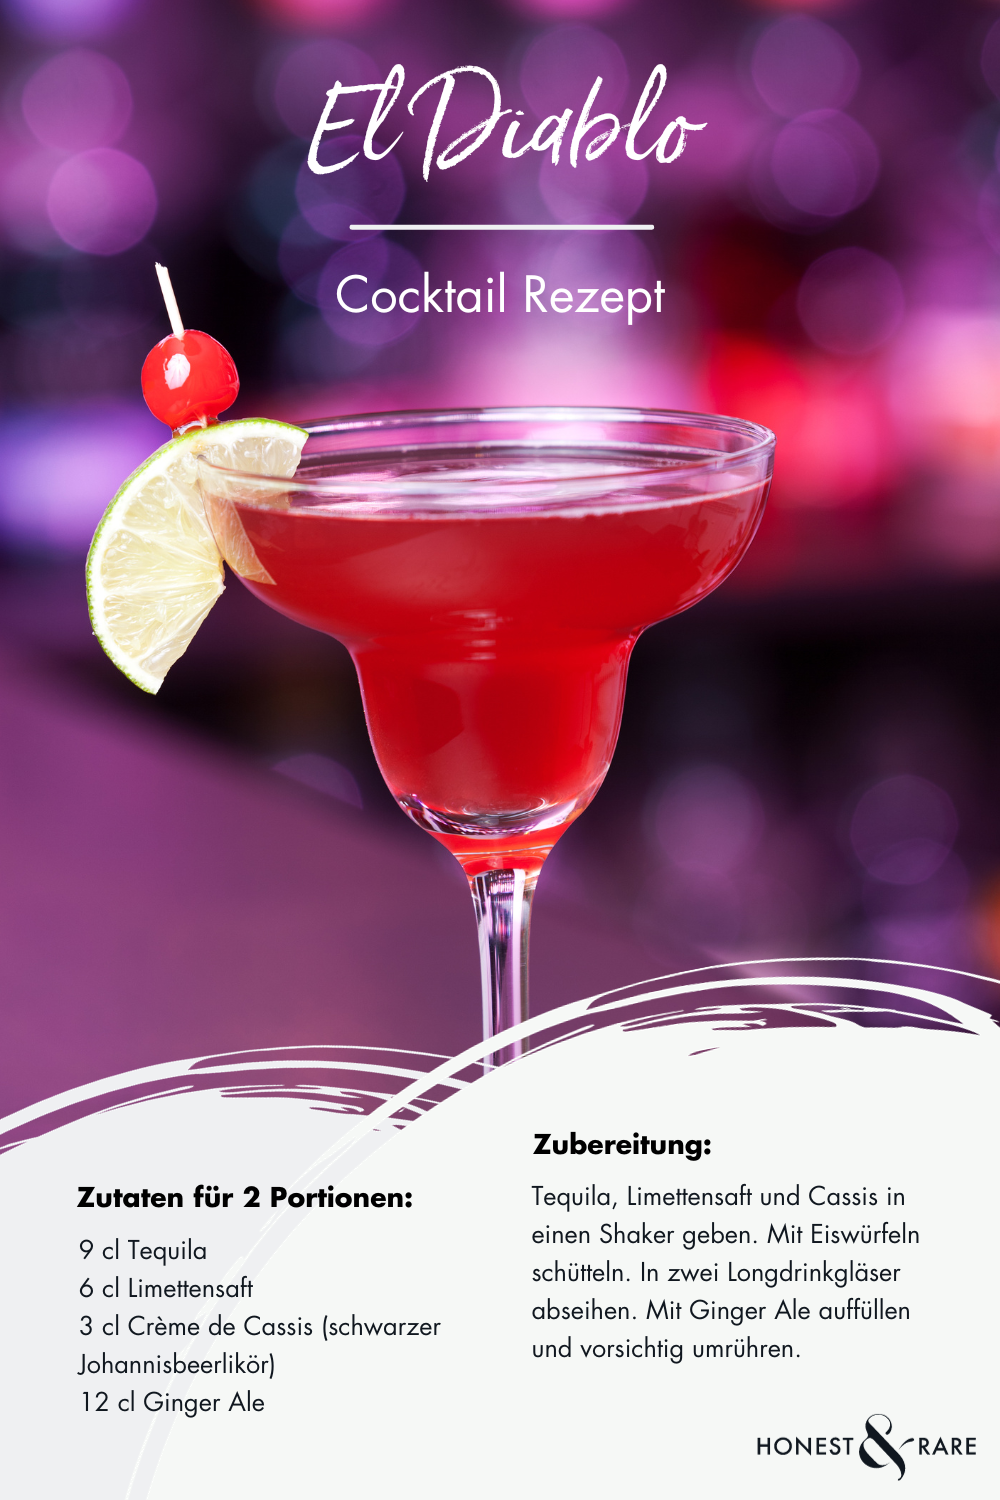 El Diablo Cocktail Rezept